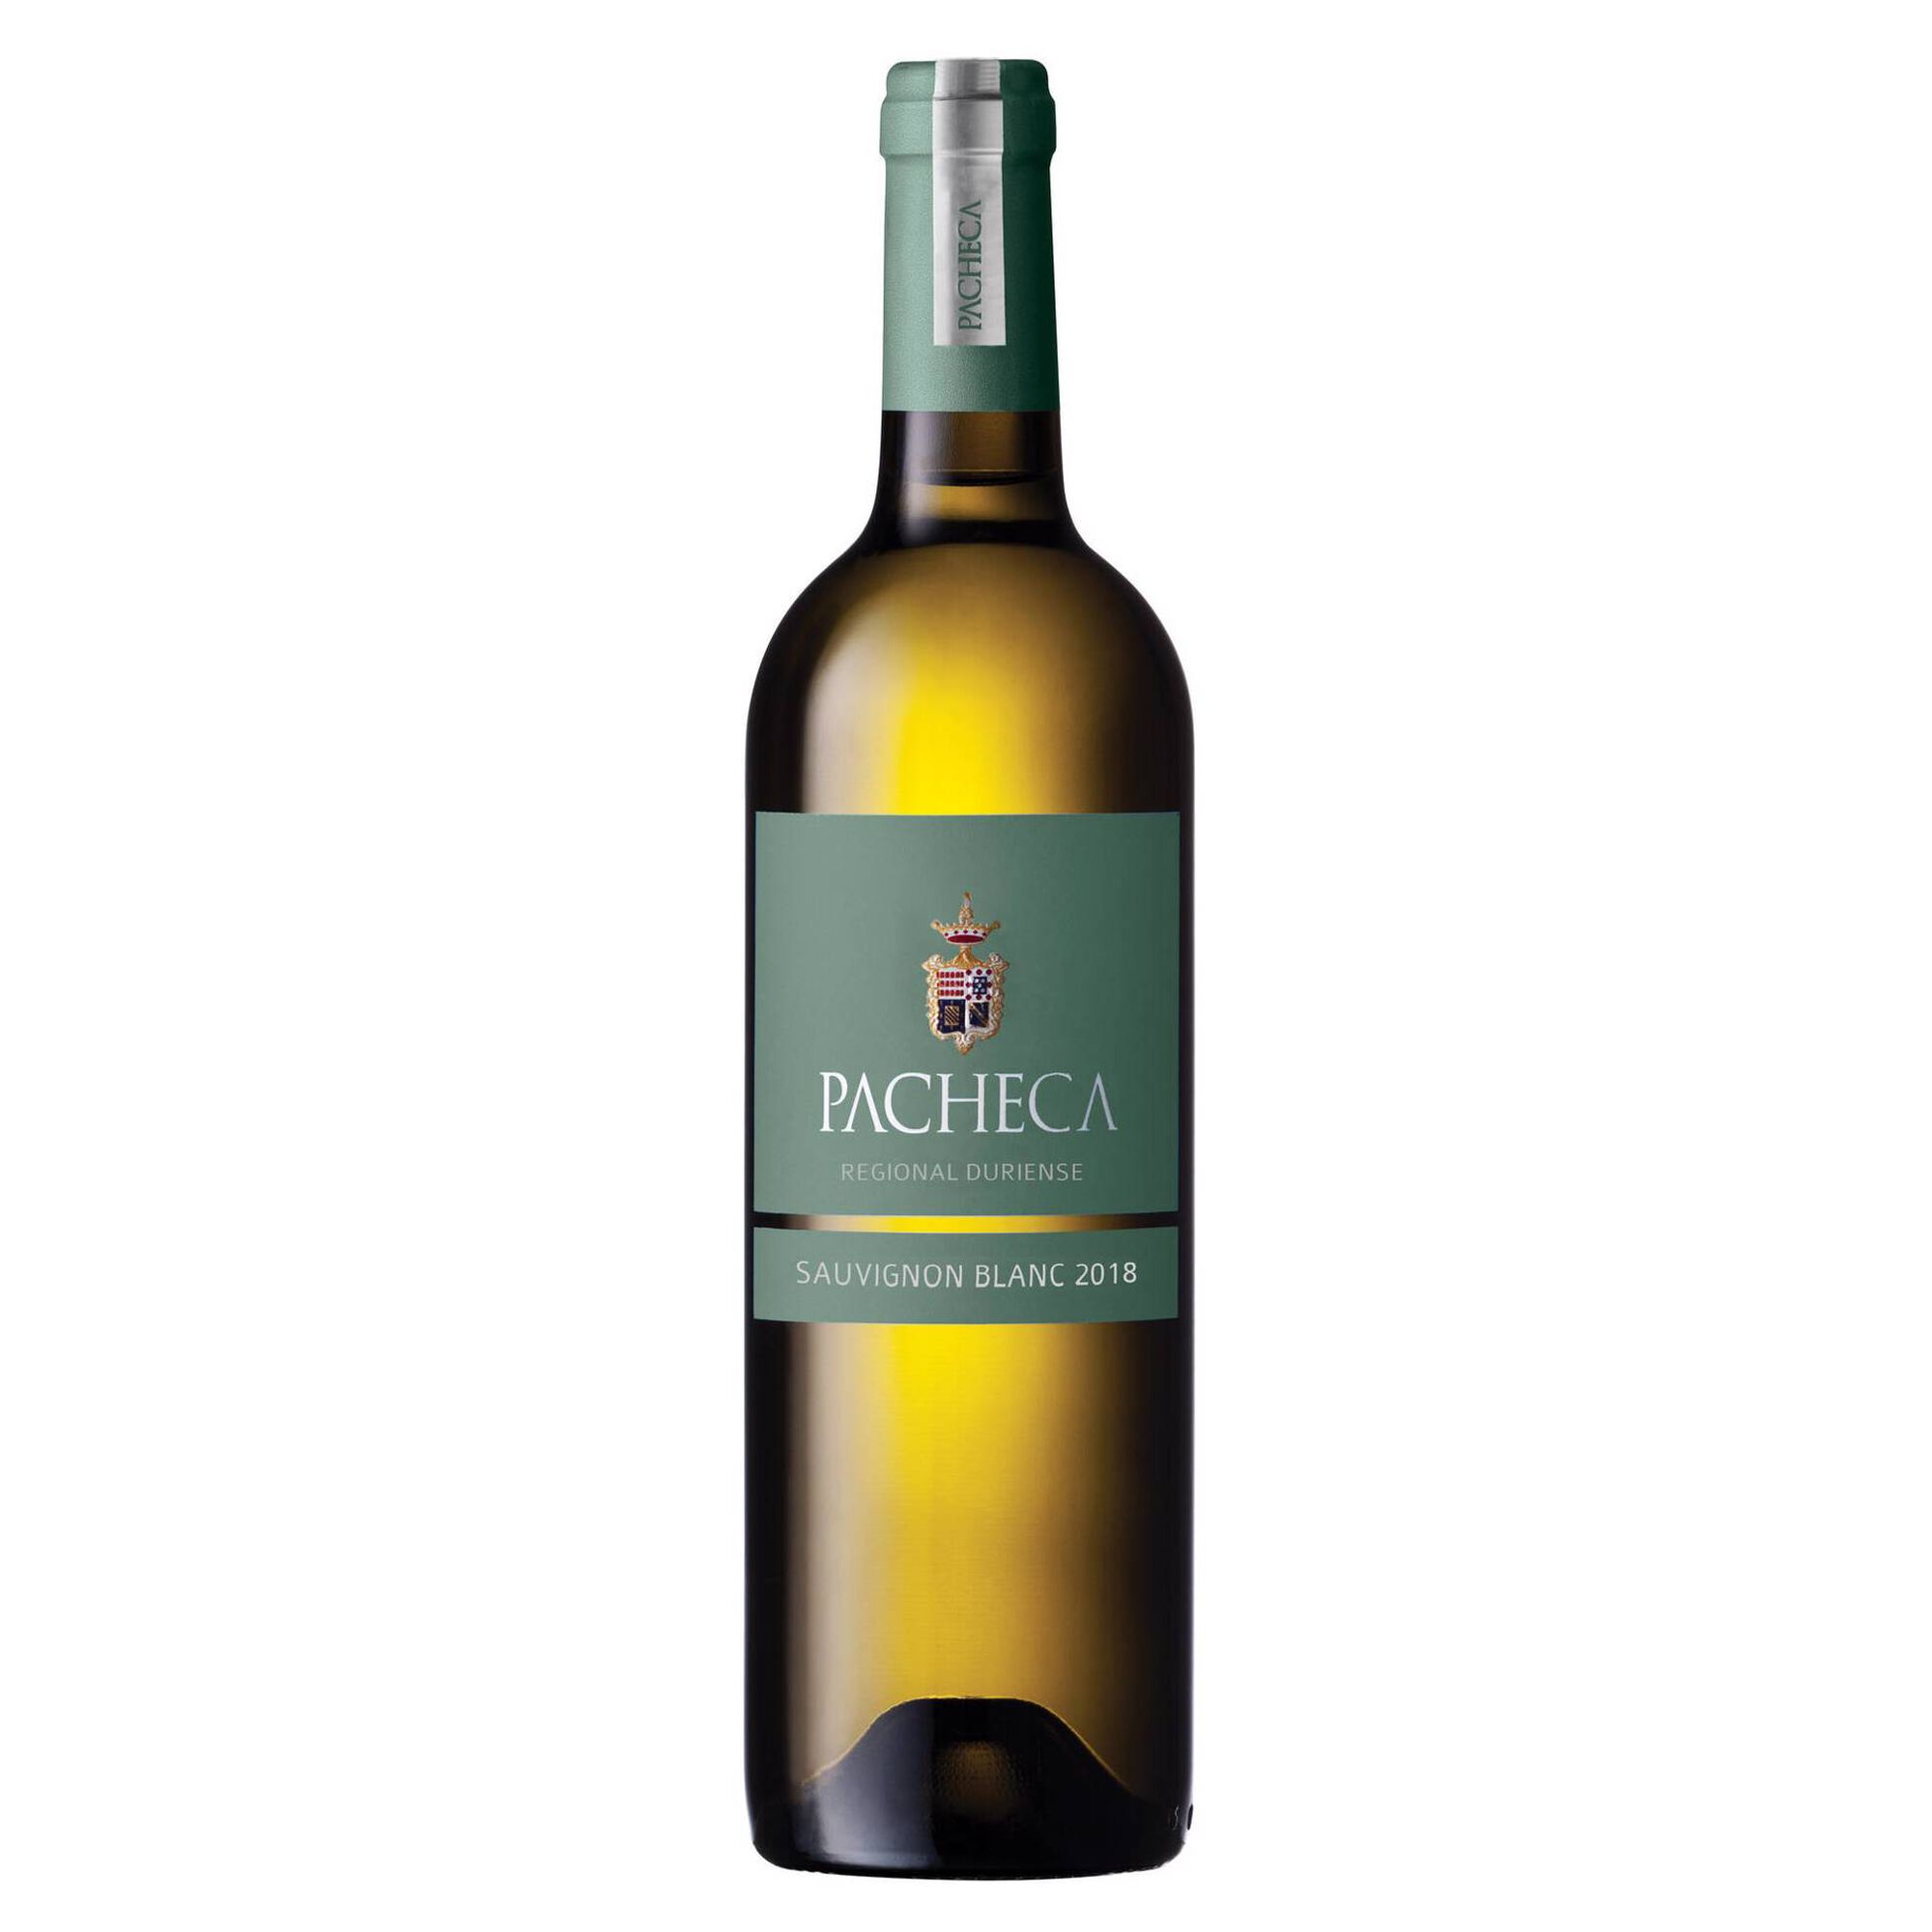 Pacheca Sauvignon Blanc Regional Duriense Vinho Branco